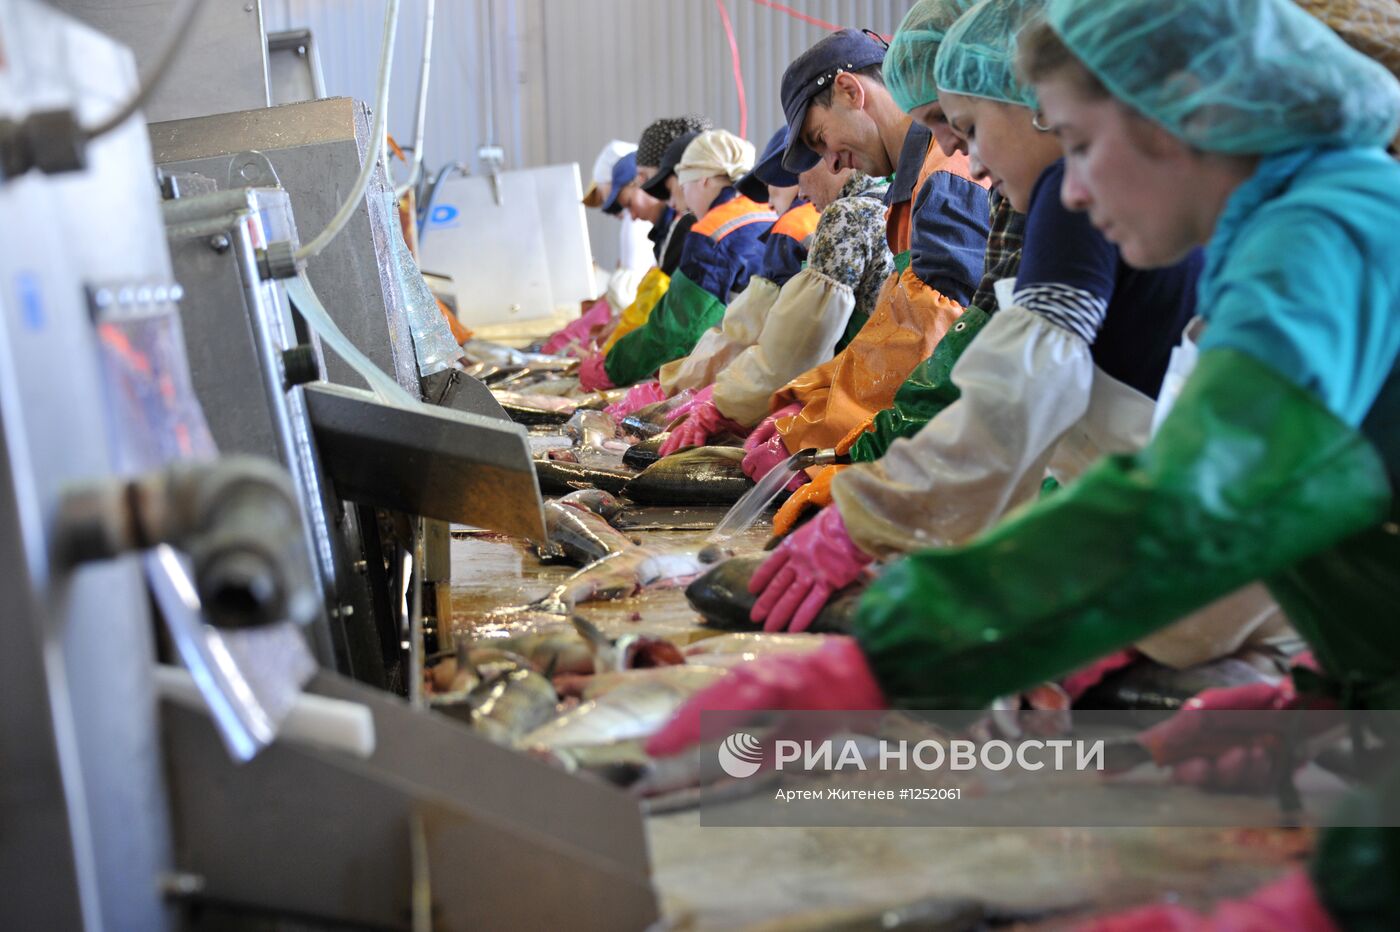 Работа рыбопромышленного предприятия "Тунайча"